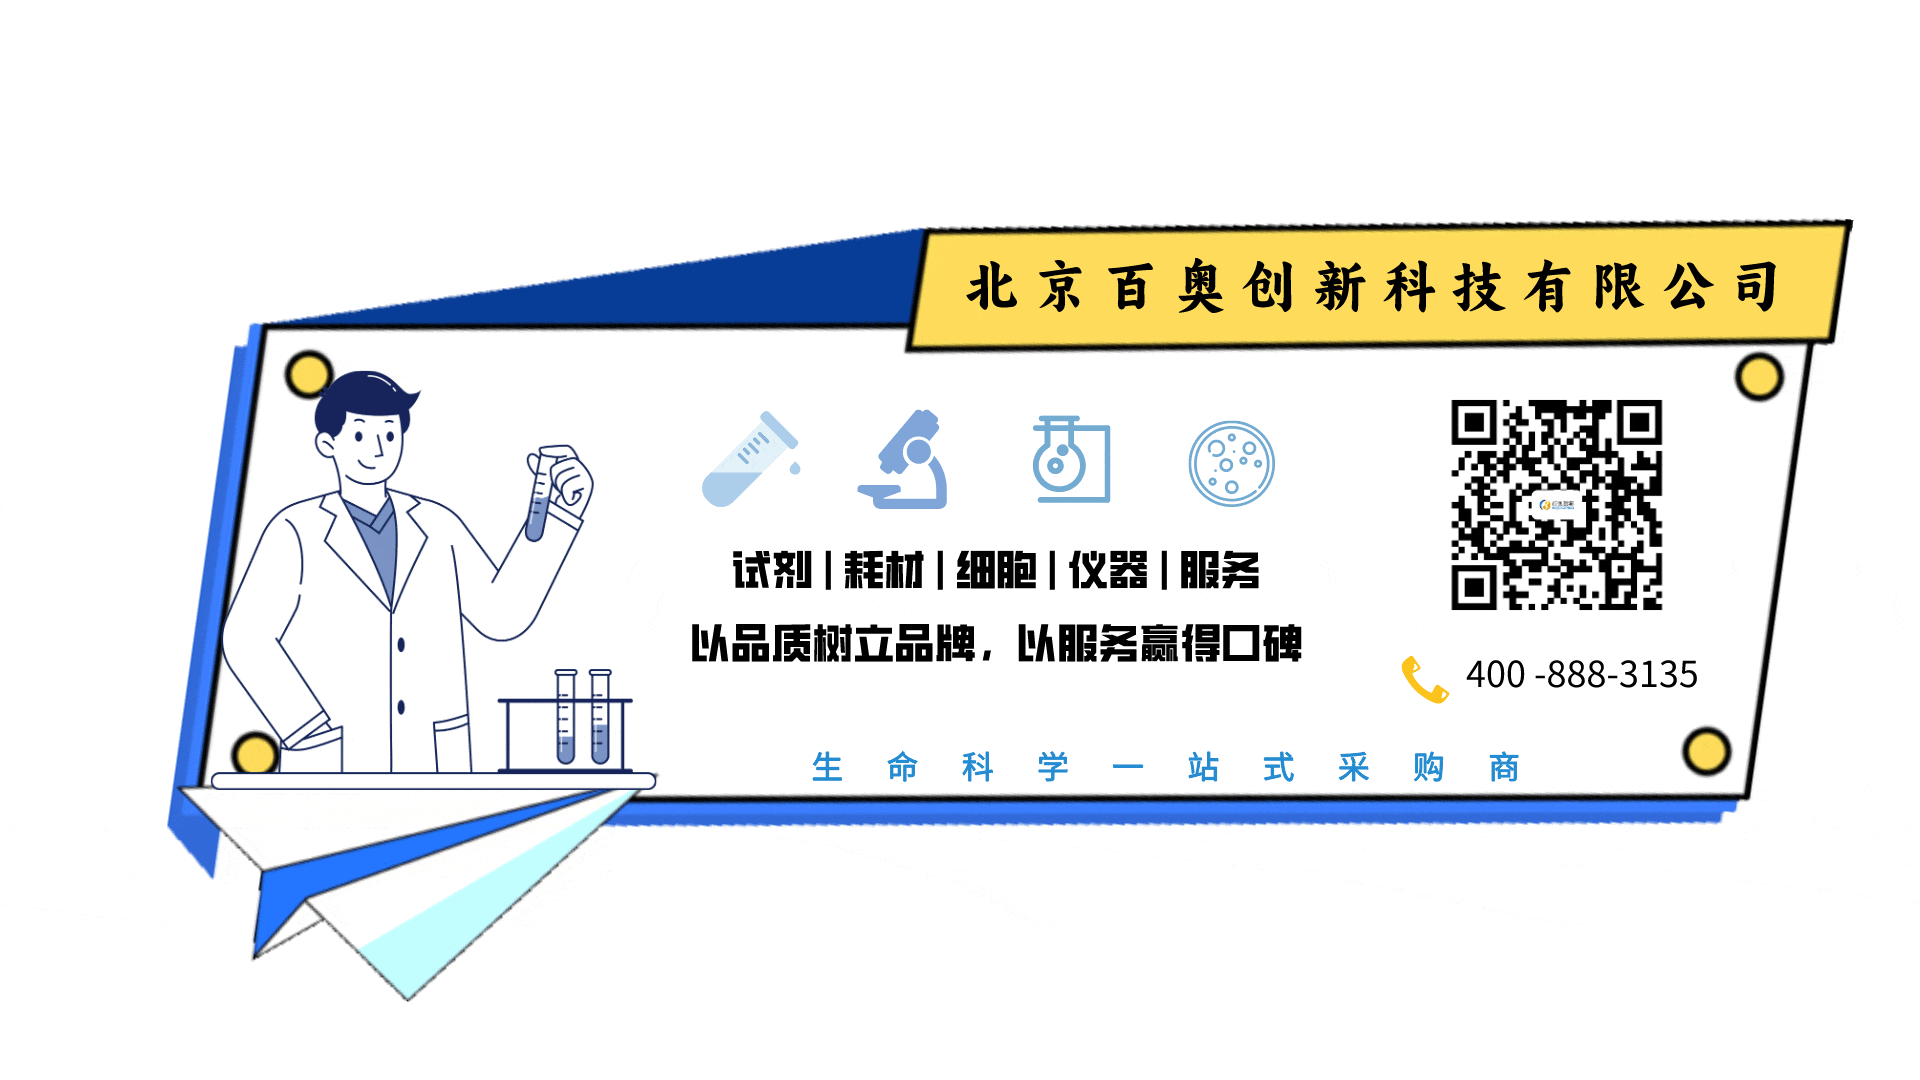 北京百奥创新科技有限公司联系方式